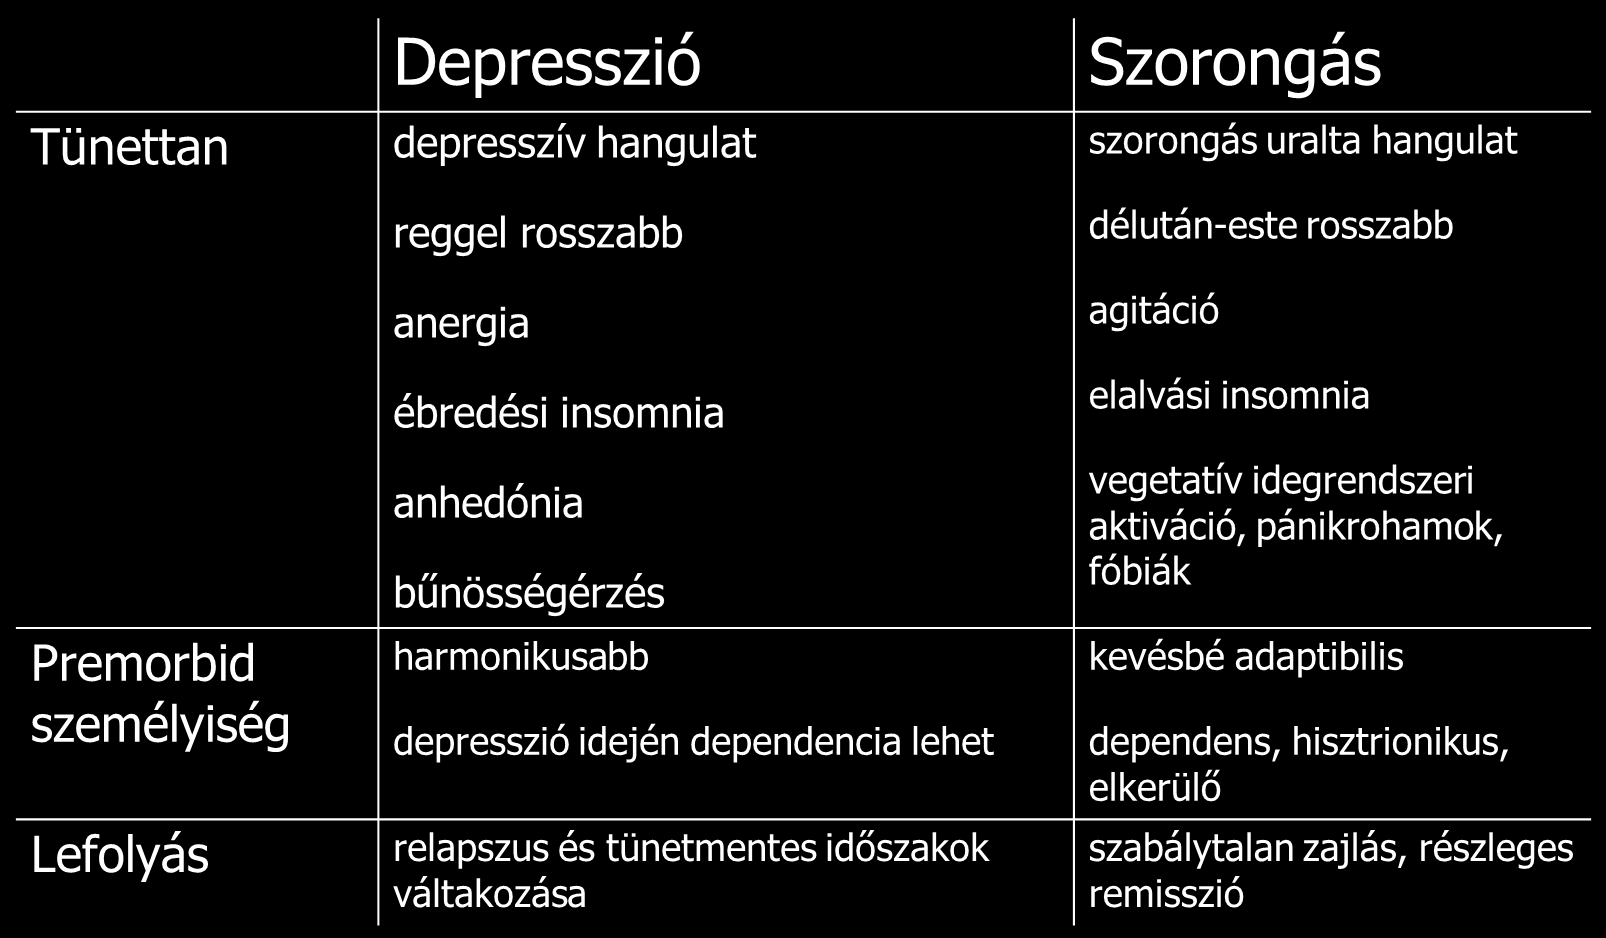 Depresszió és szorongás Időskori depresszióban gyakori tünet